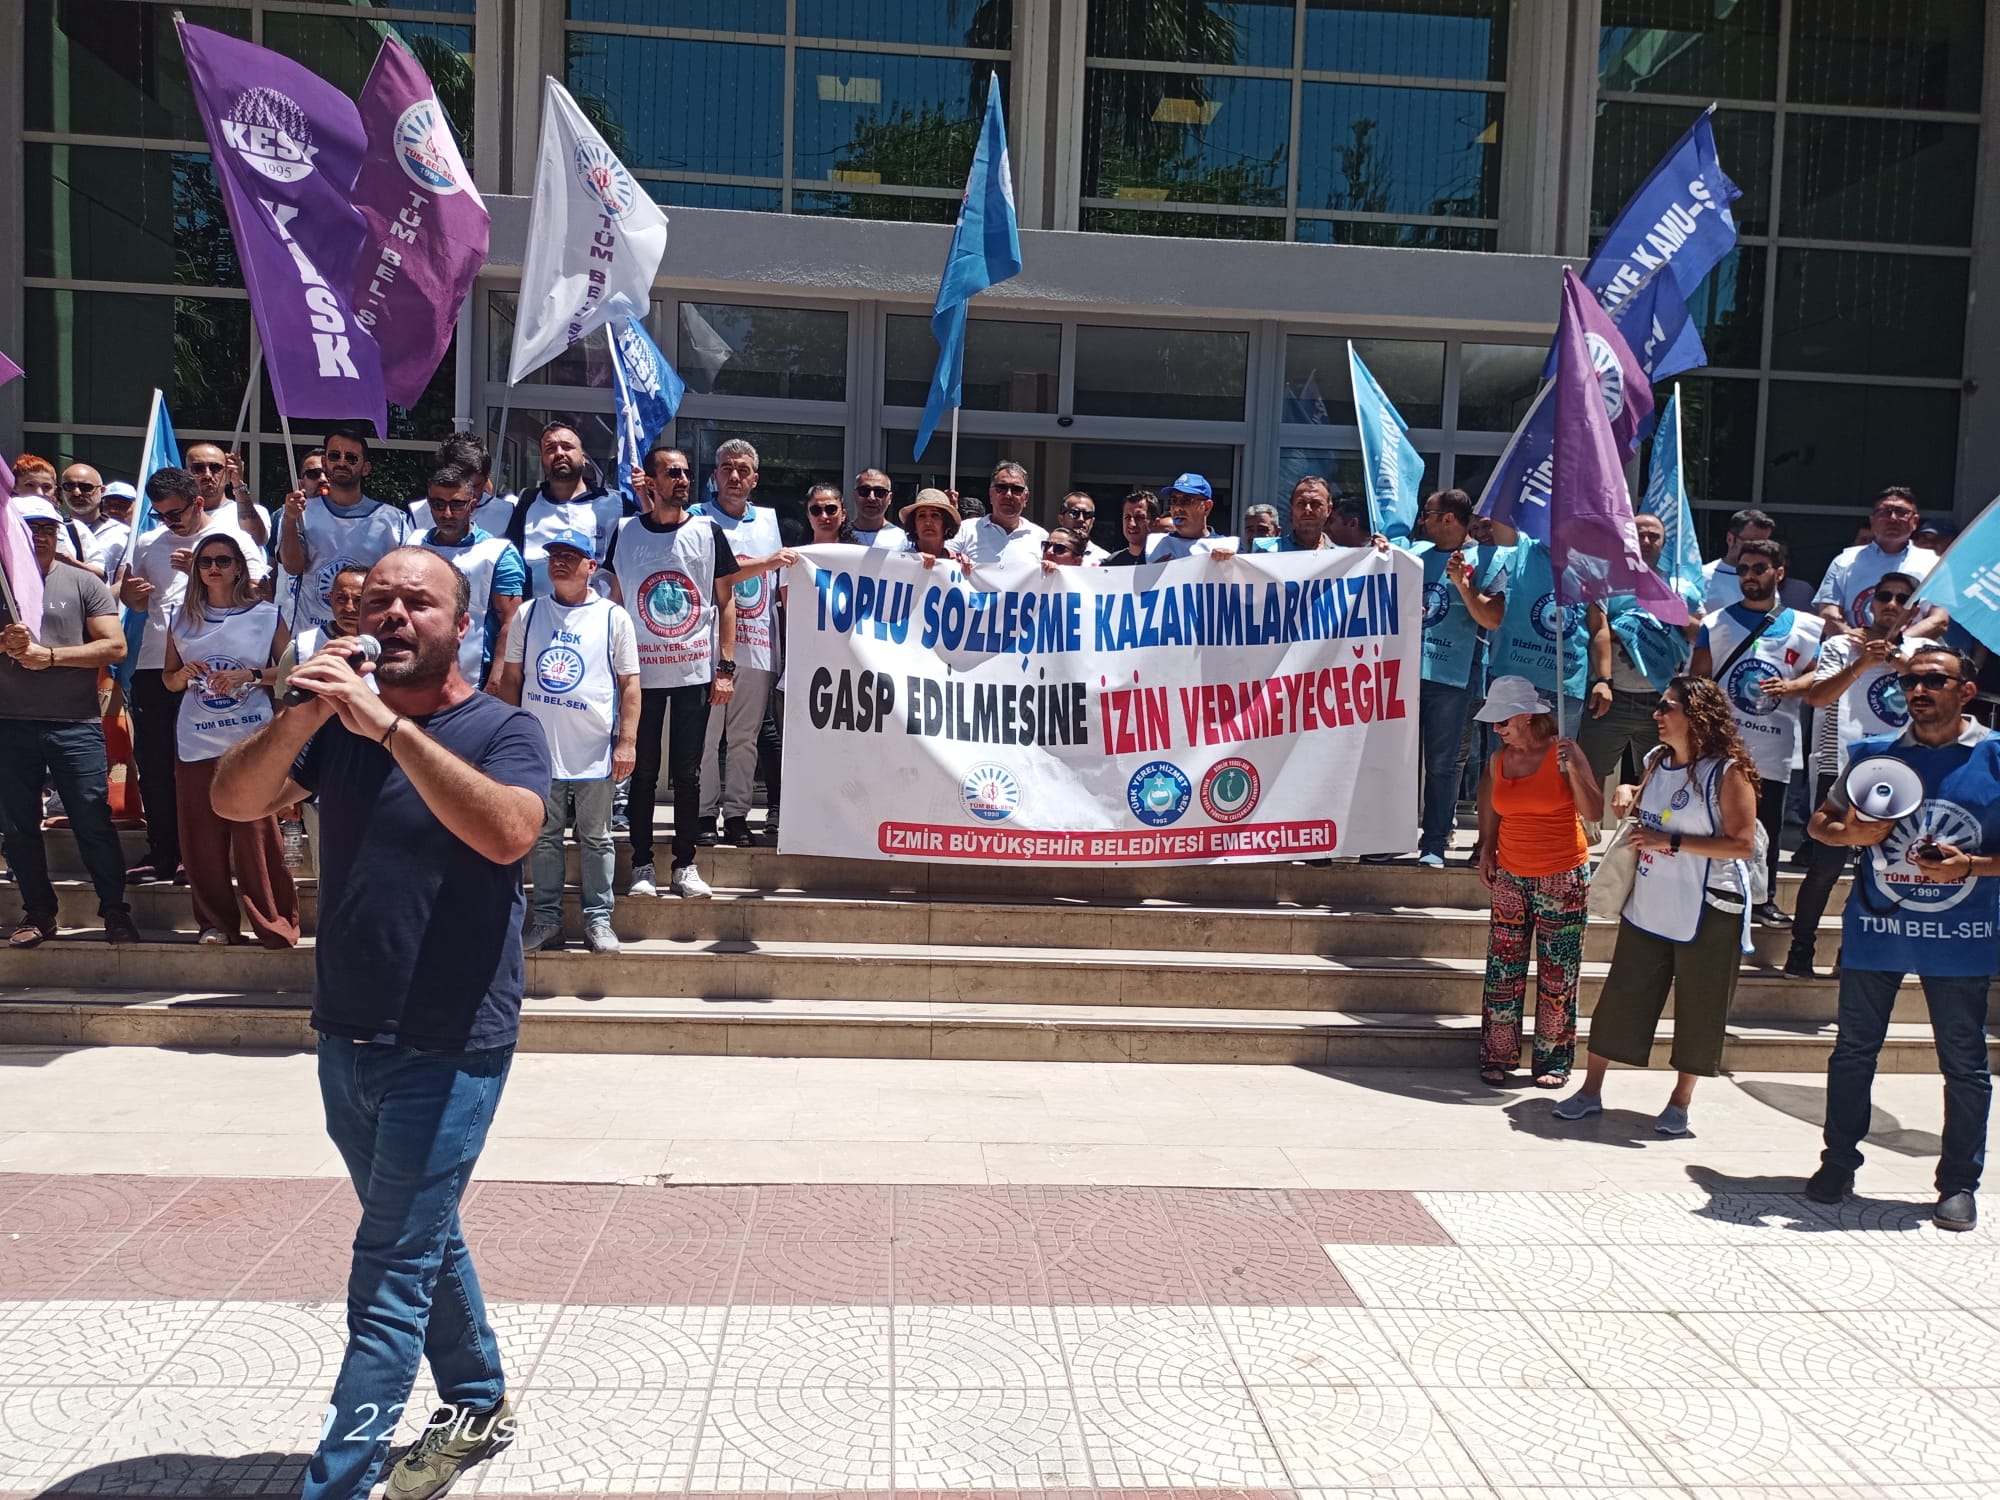 Tüm-Bel Sen CHP’yi reddetti… “Somut adımlar bekliyoruz”